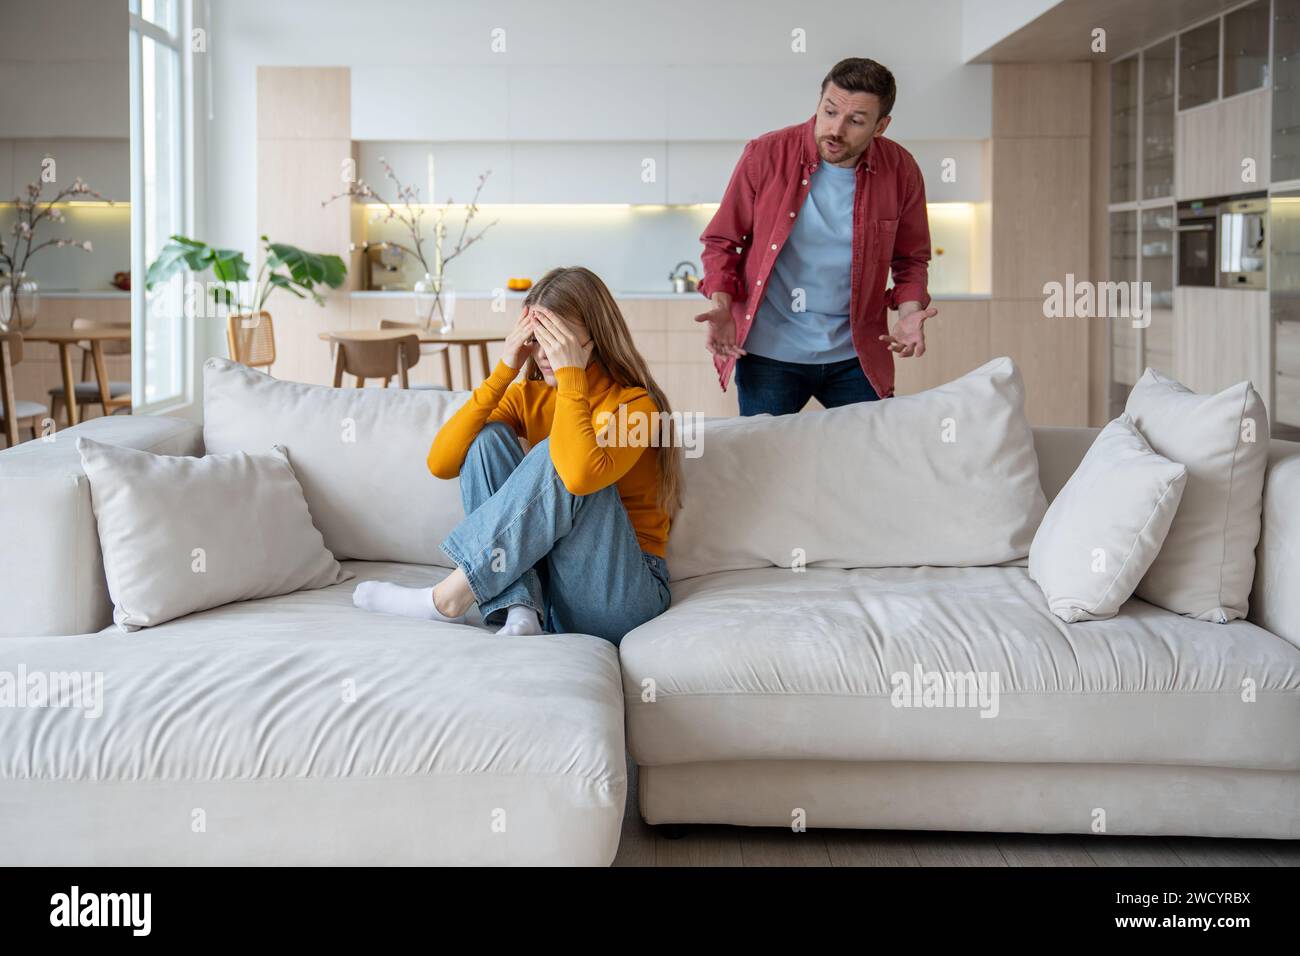 Ein wütender Mann schreit die Frau an, die auf dem Sofa sitzt und das Gesicht mit Händen bedeckt, Konflikt, emotionale Not Stockfoto